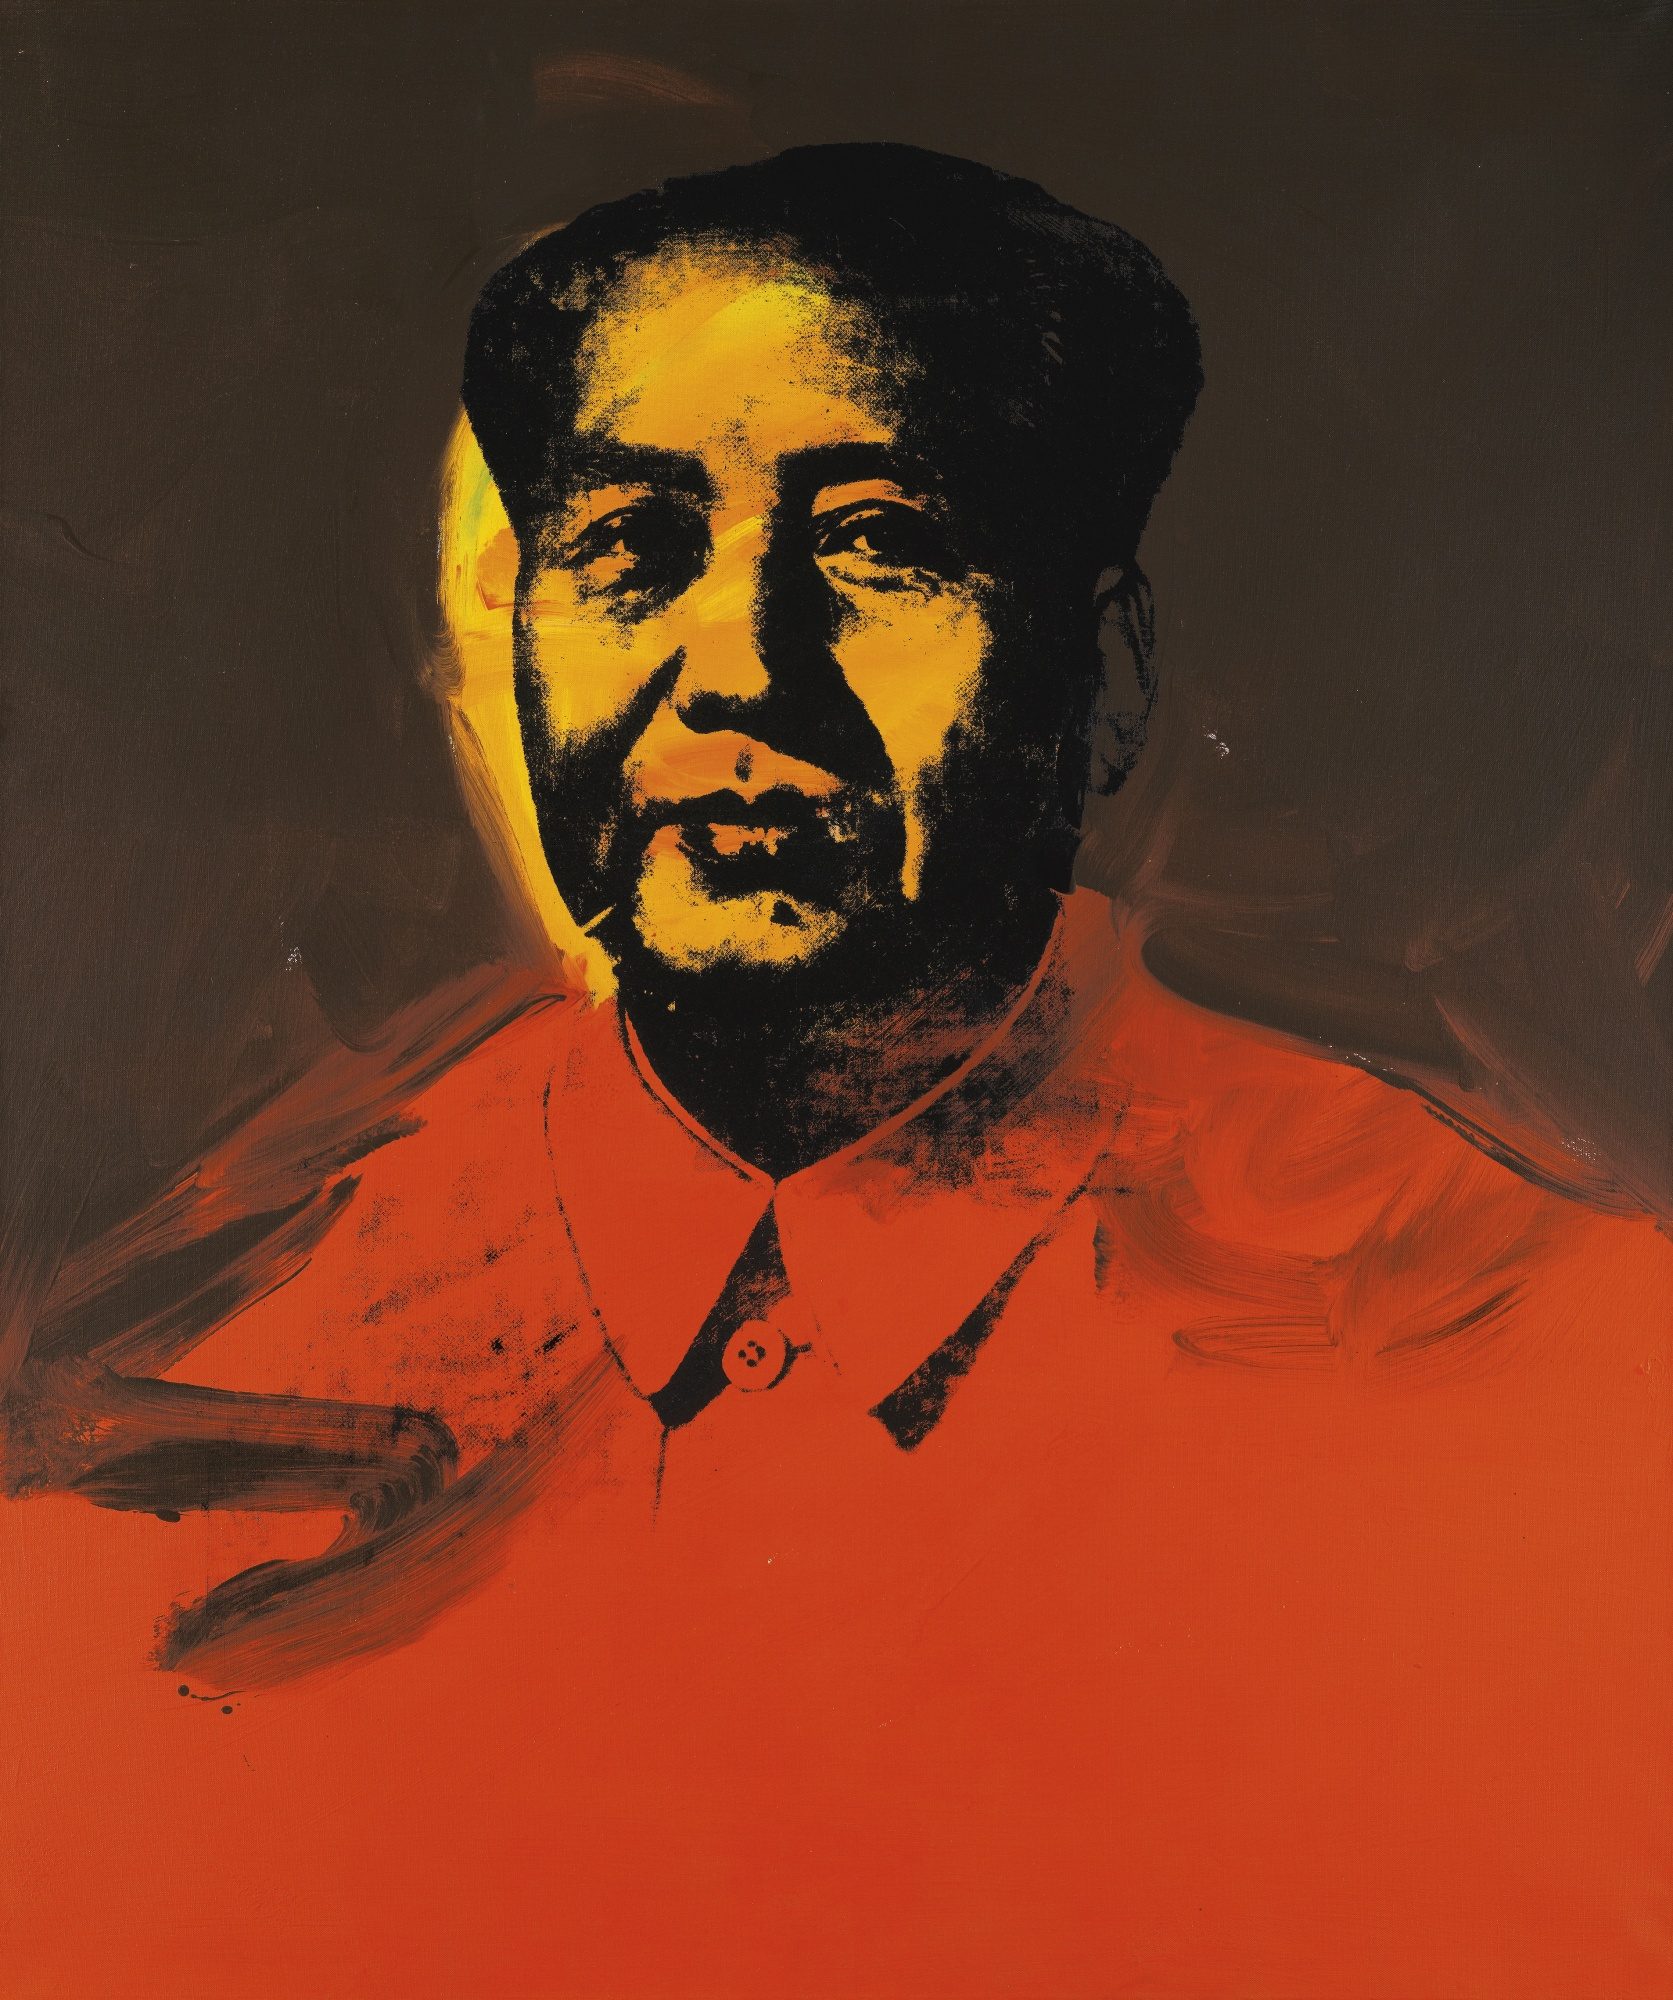 Le portrait de Mao d’Andy Warhol pied de nez à Richard Nixon